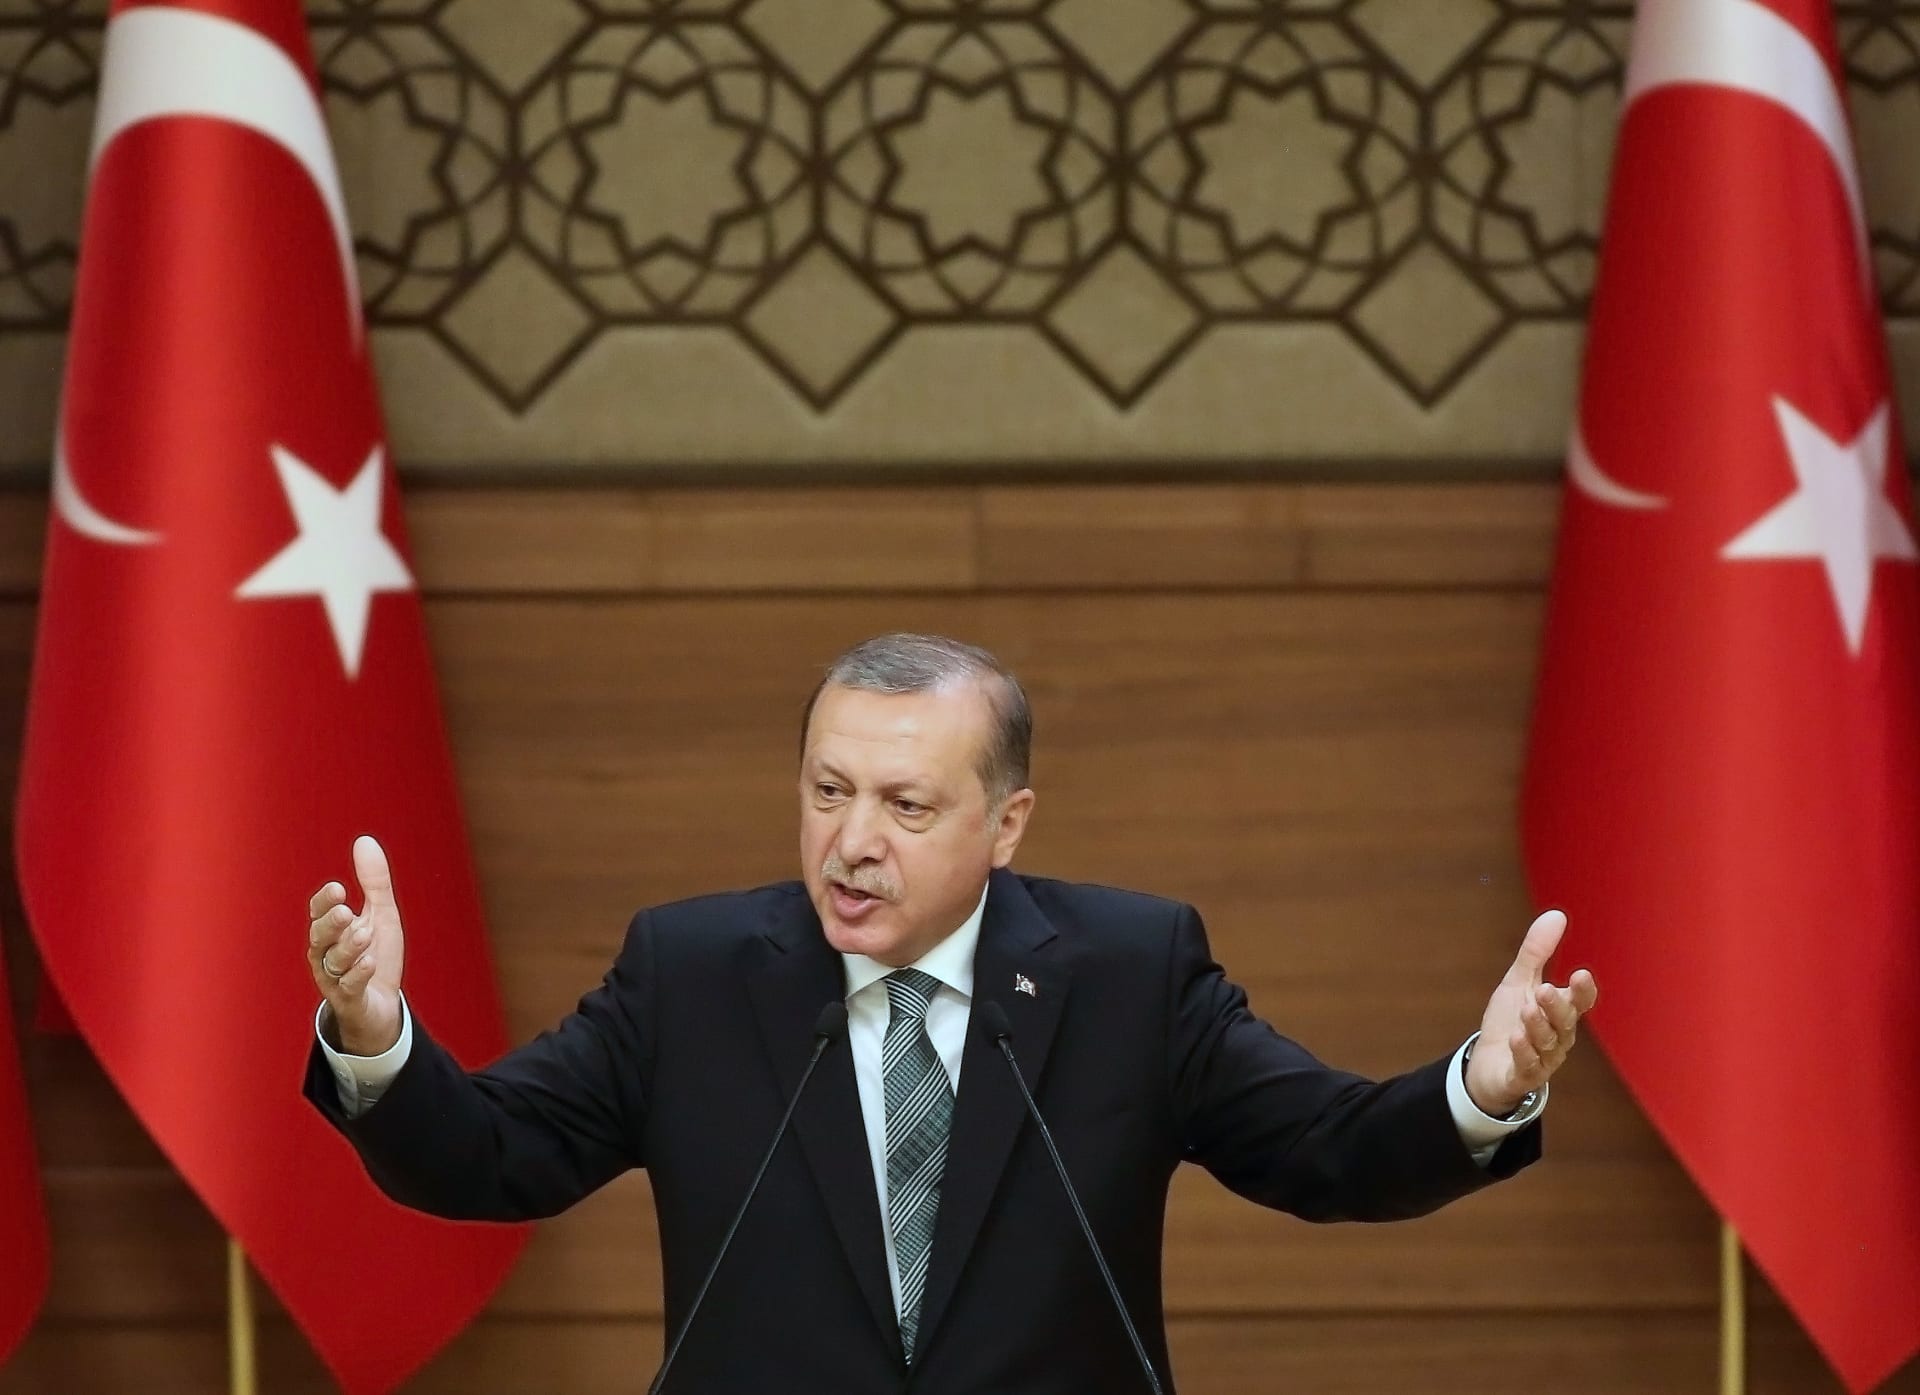 أردوغان: "درع الفرات" في سوريا لن تتوقف عند الباب وستواصل للرقة